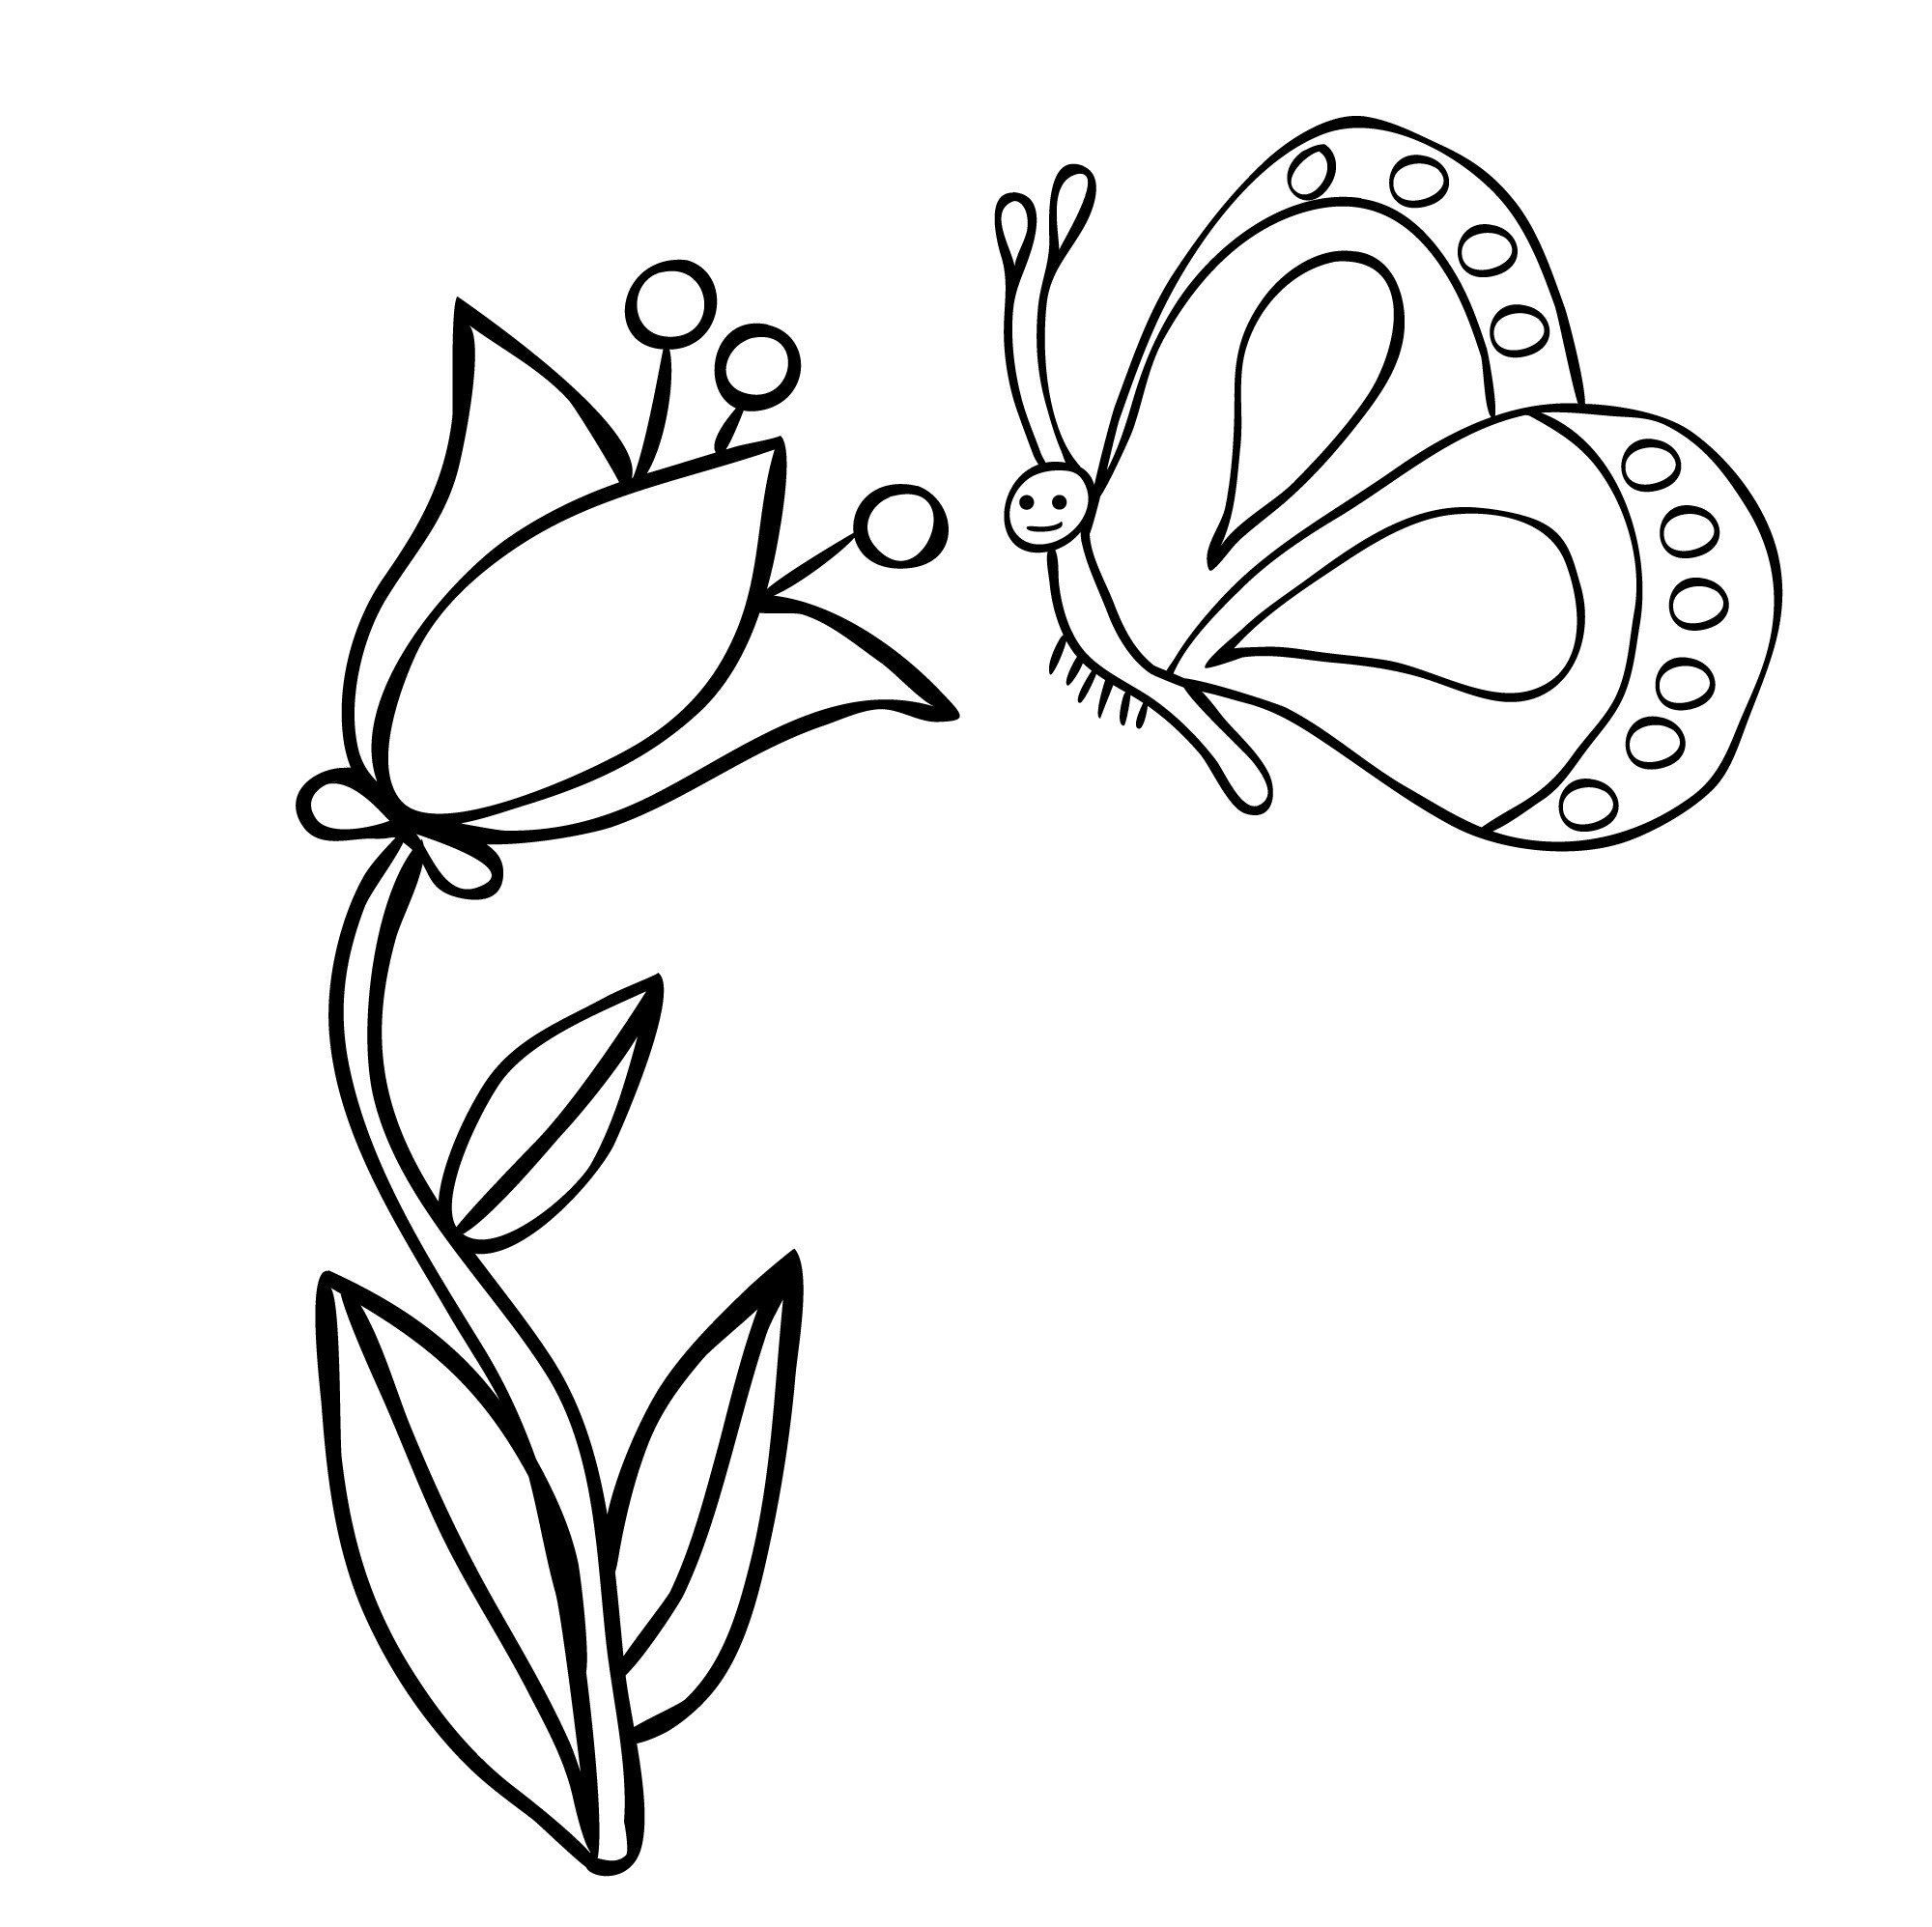 Раскраска для детей: бабочка прилетела к цветку колокольчик